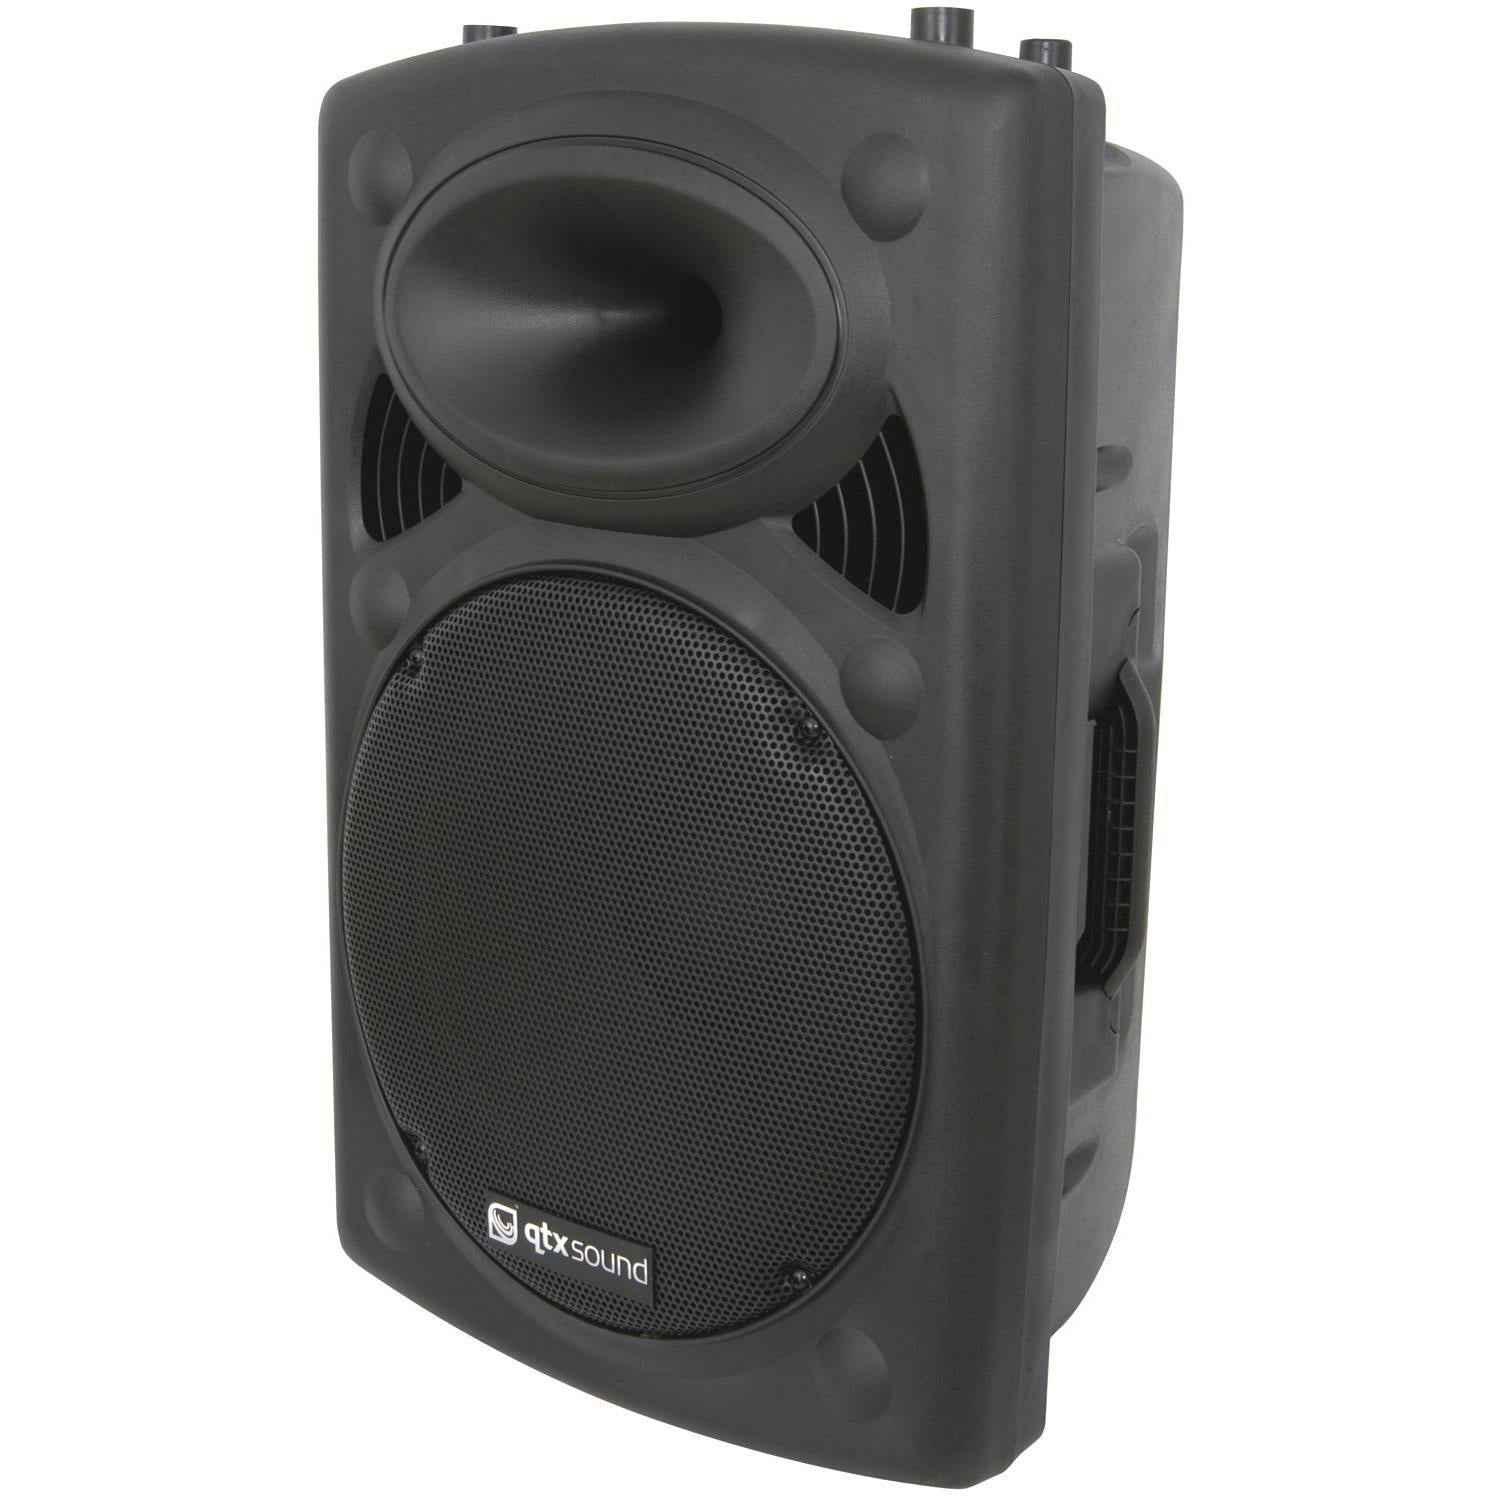 QTX QR15 15" Passive ABS Speaker - DY Pro Audio